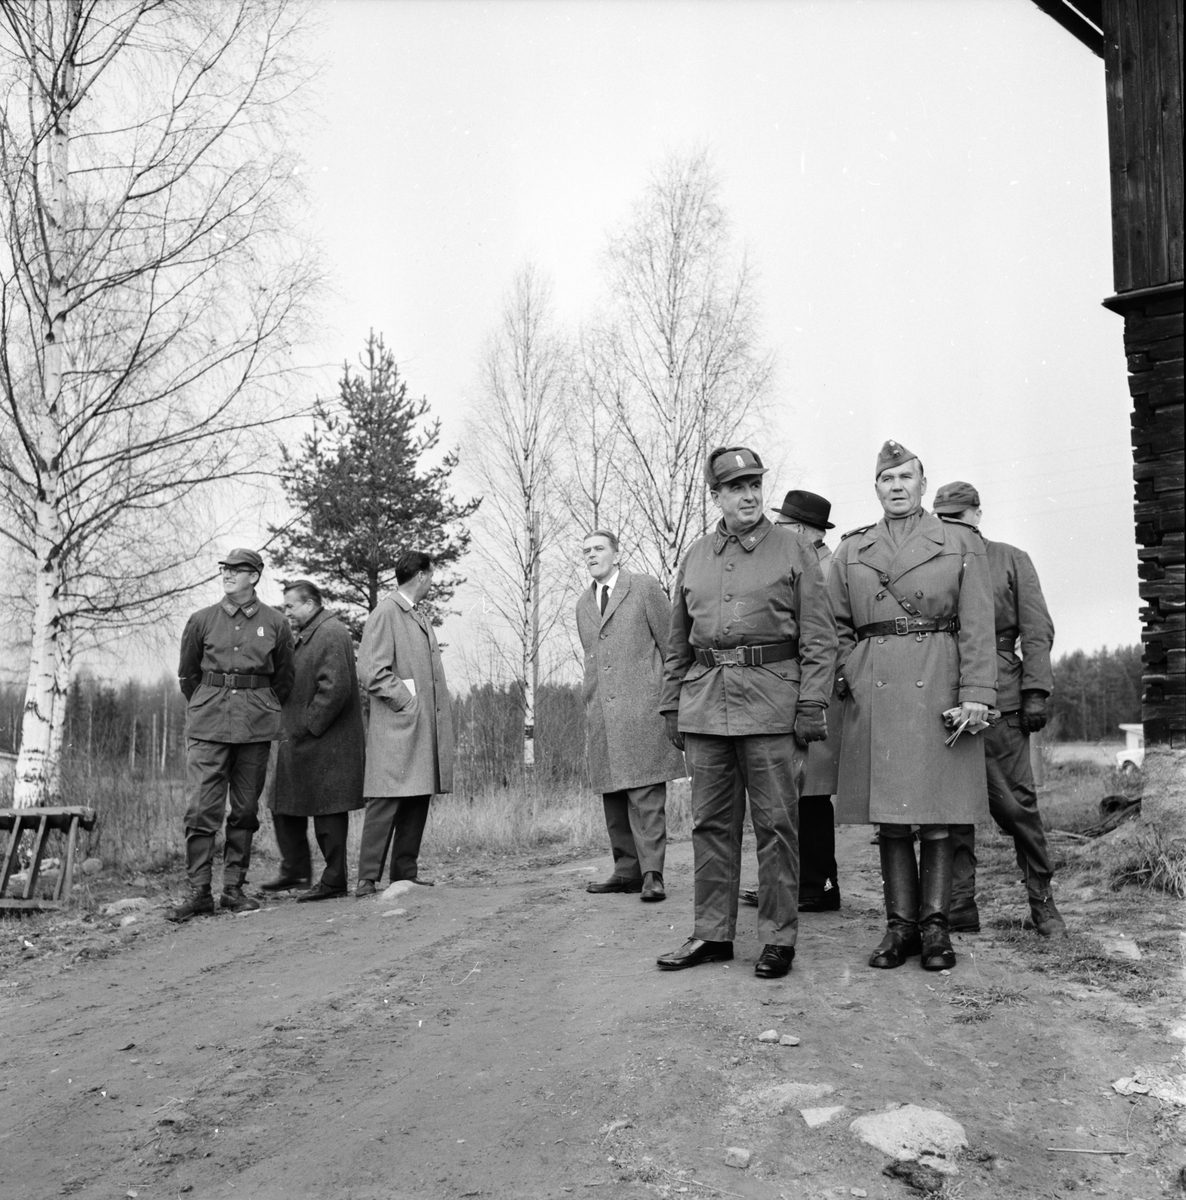 Driftvärnsövning,
Bollegården,
24 Oktober 1963